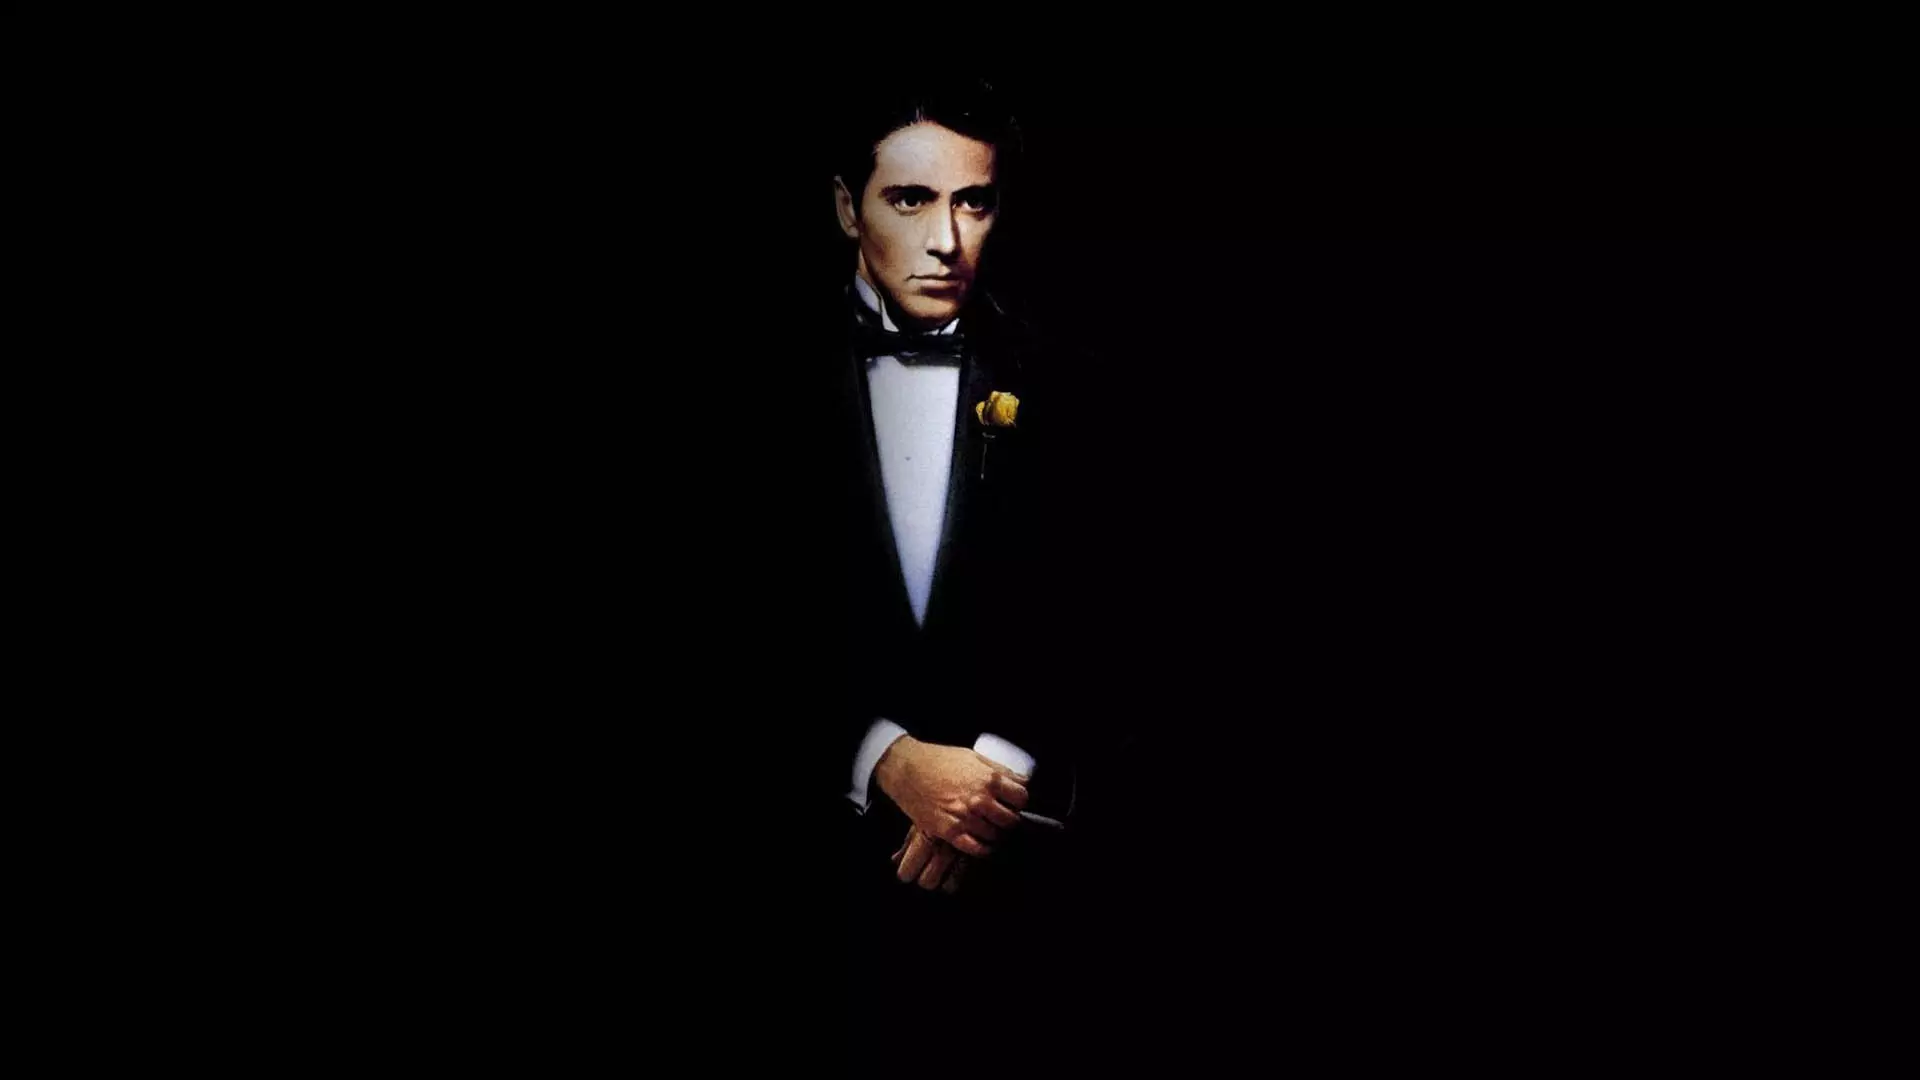 آل پاچینو در کاور سینمایی فیلم The Godfather Part II